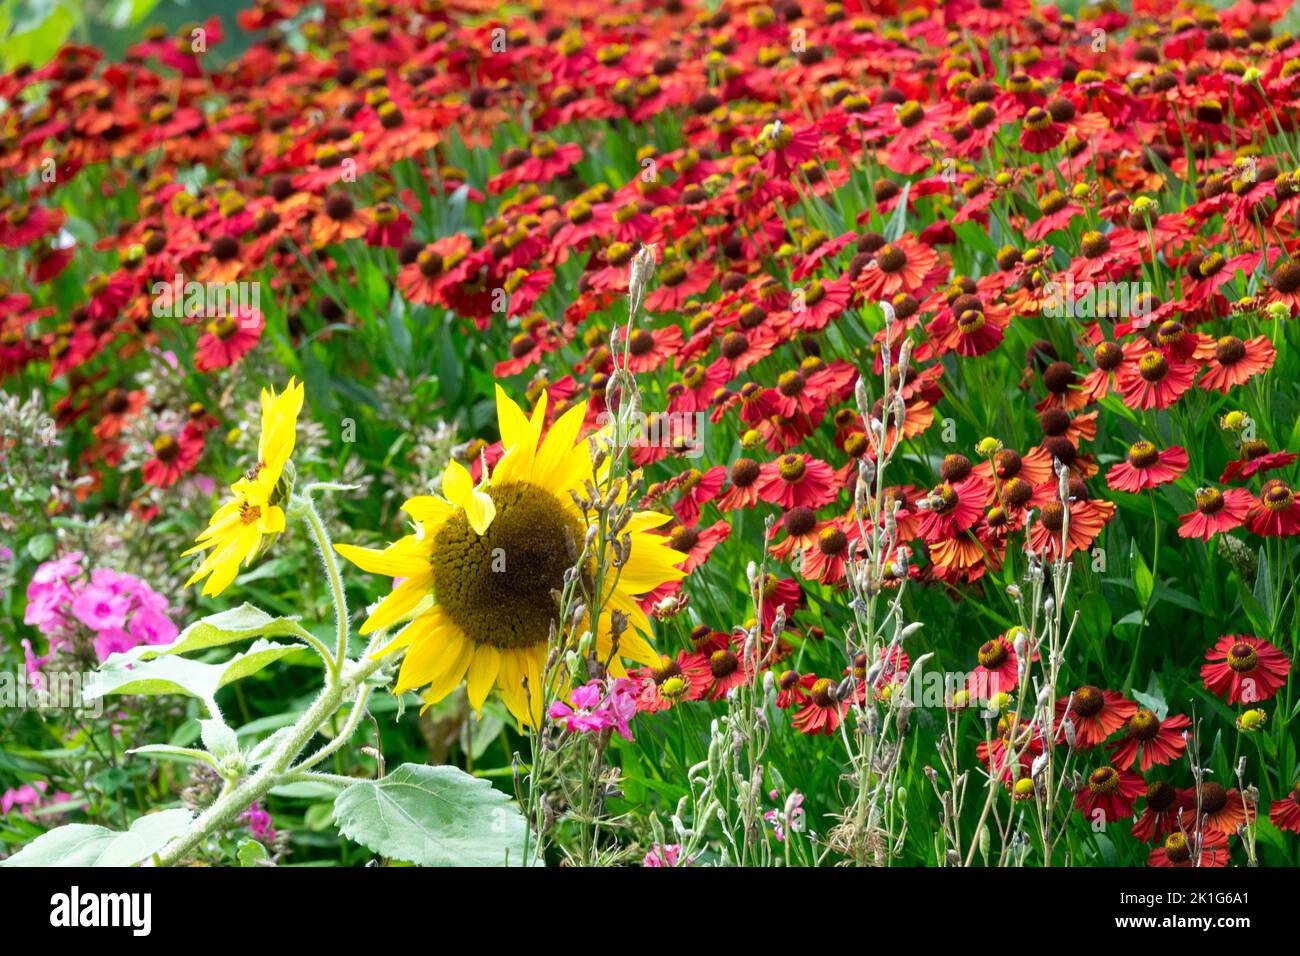 Helenium 'Red Velvet' Garden sunflower yellow-red colour combination in a garden flower bed in full bloom, summer plants Stock Photo